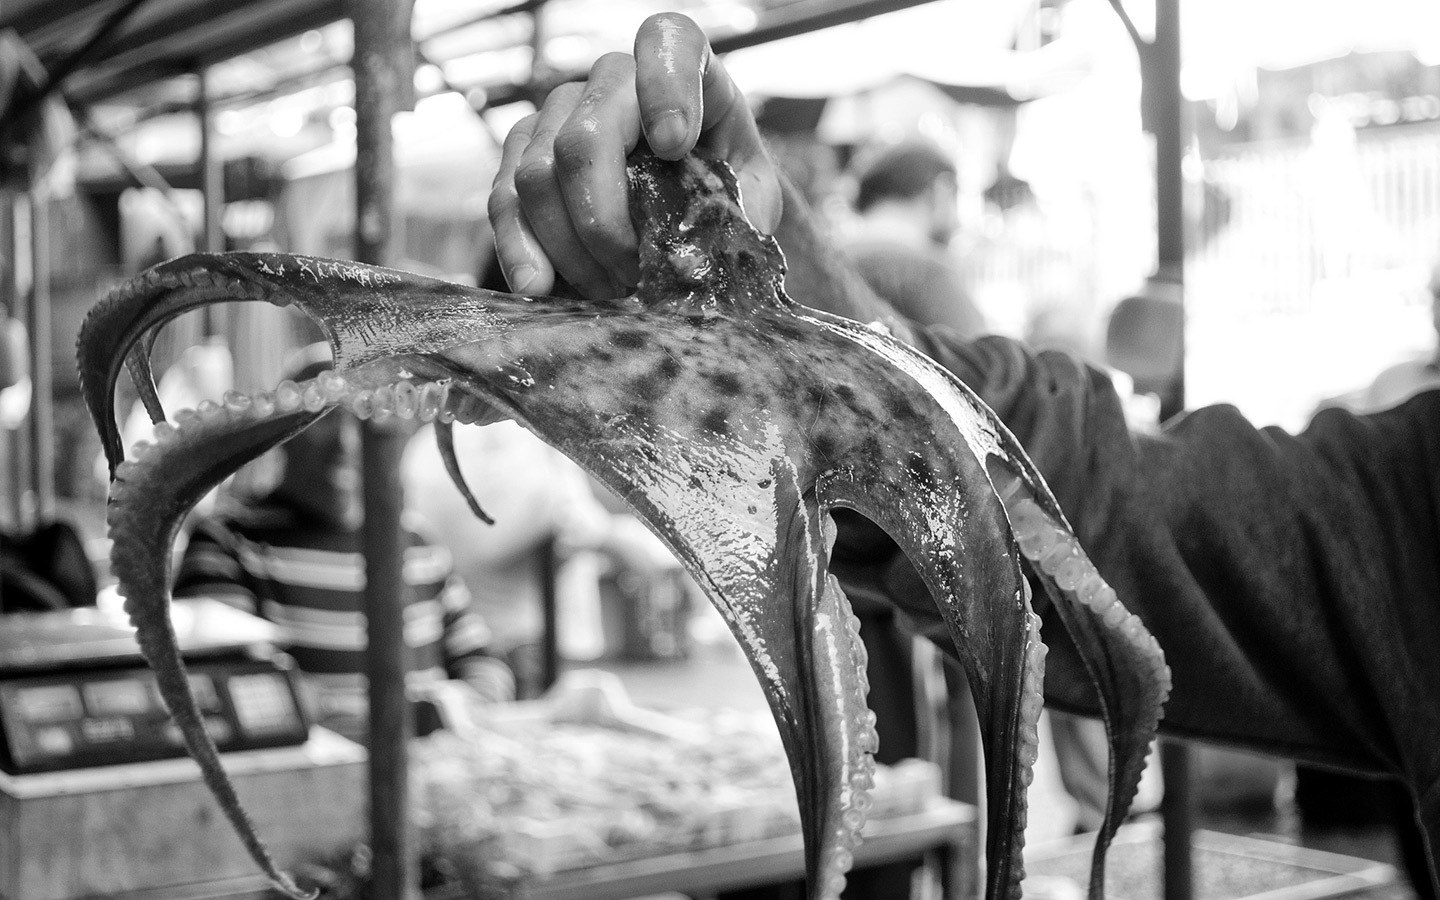 Catania fish market (La Pescheria) in Sicily